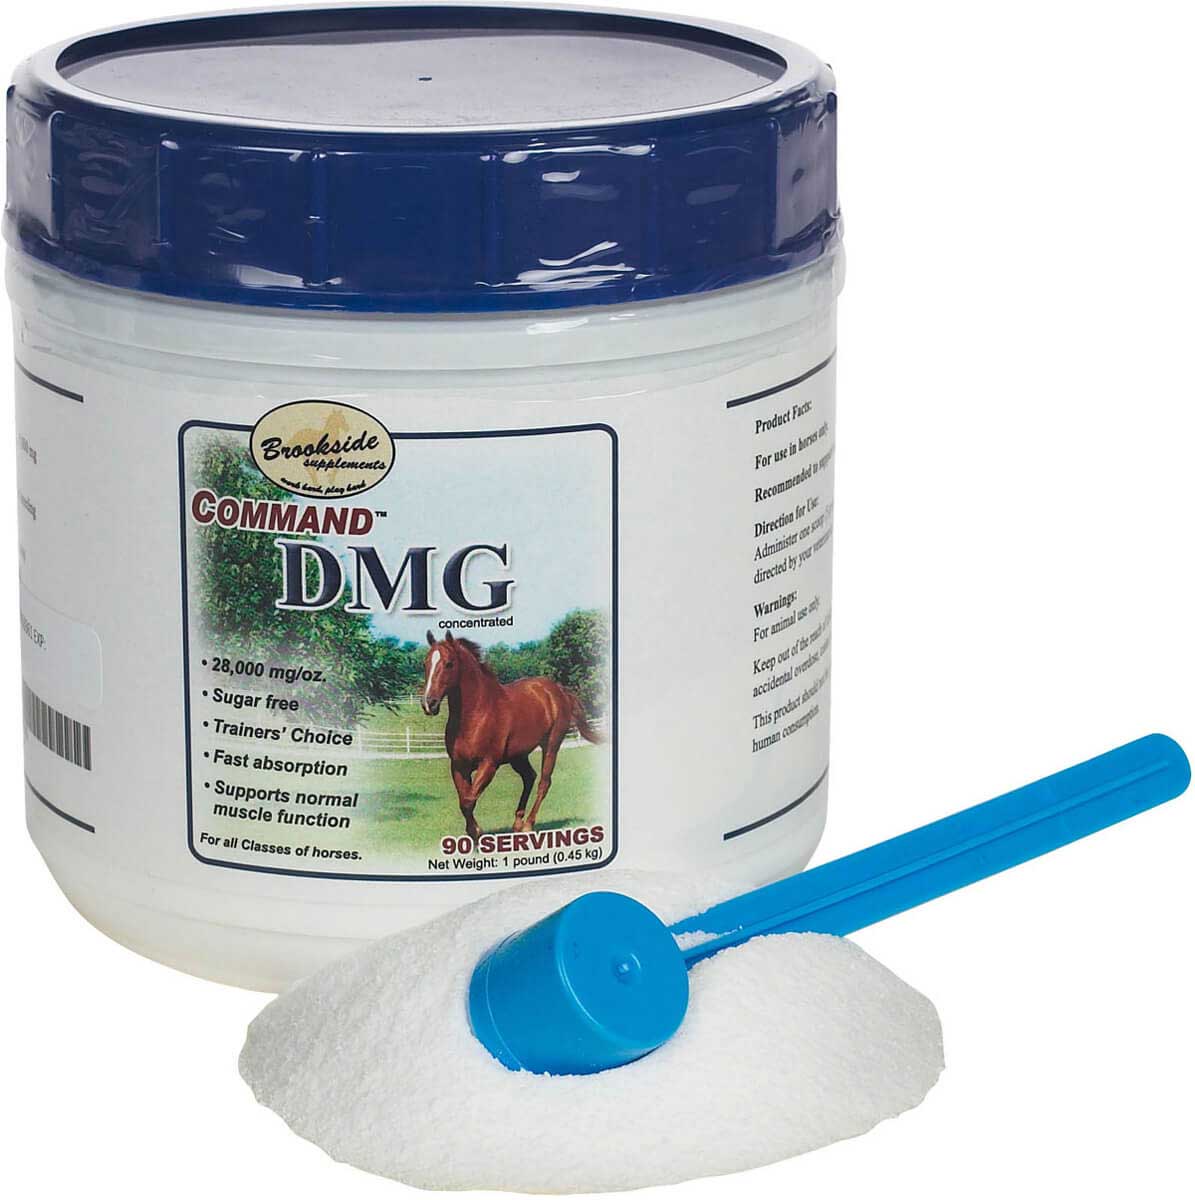 dmg for horses